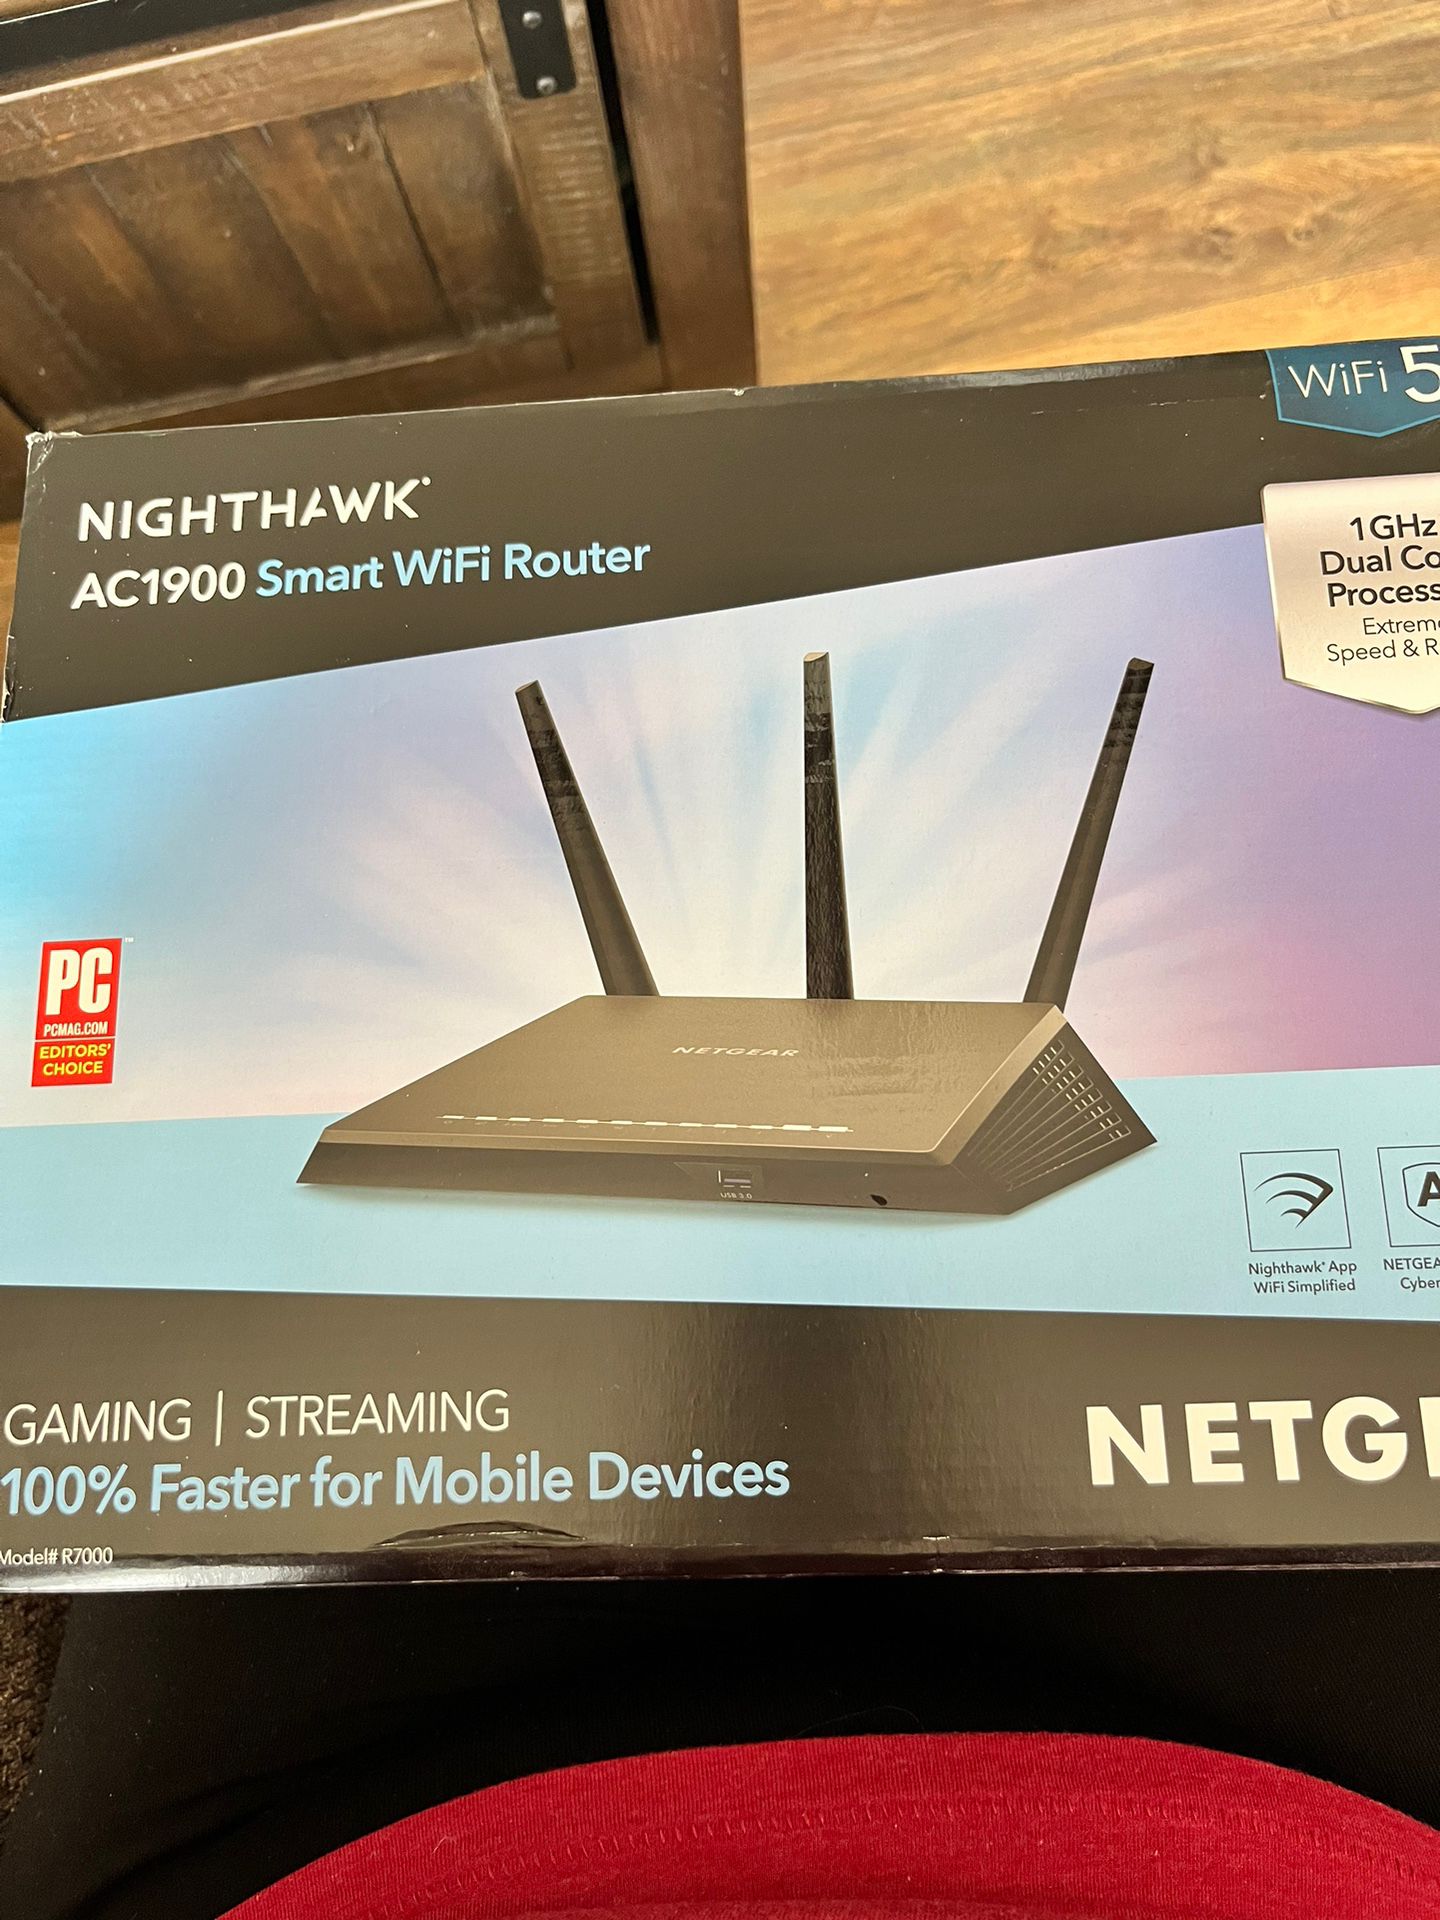 Neat Gear Nighthawk Smart WiFi Router